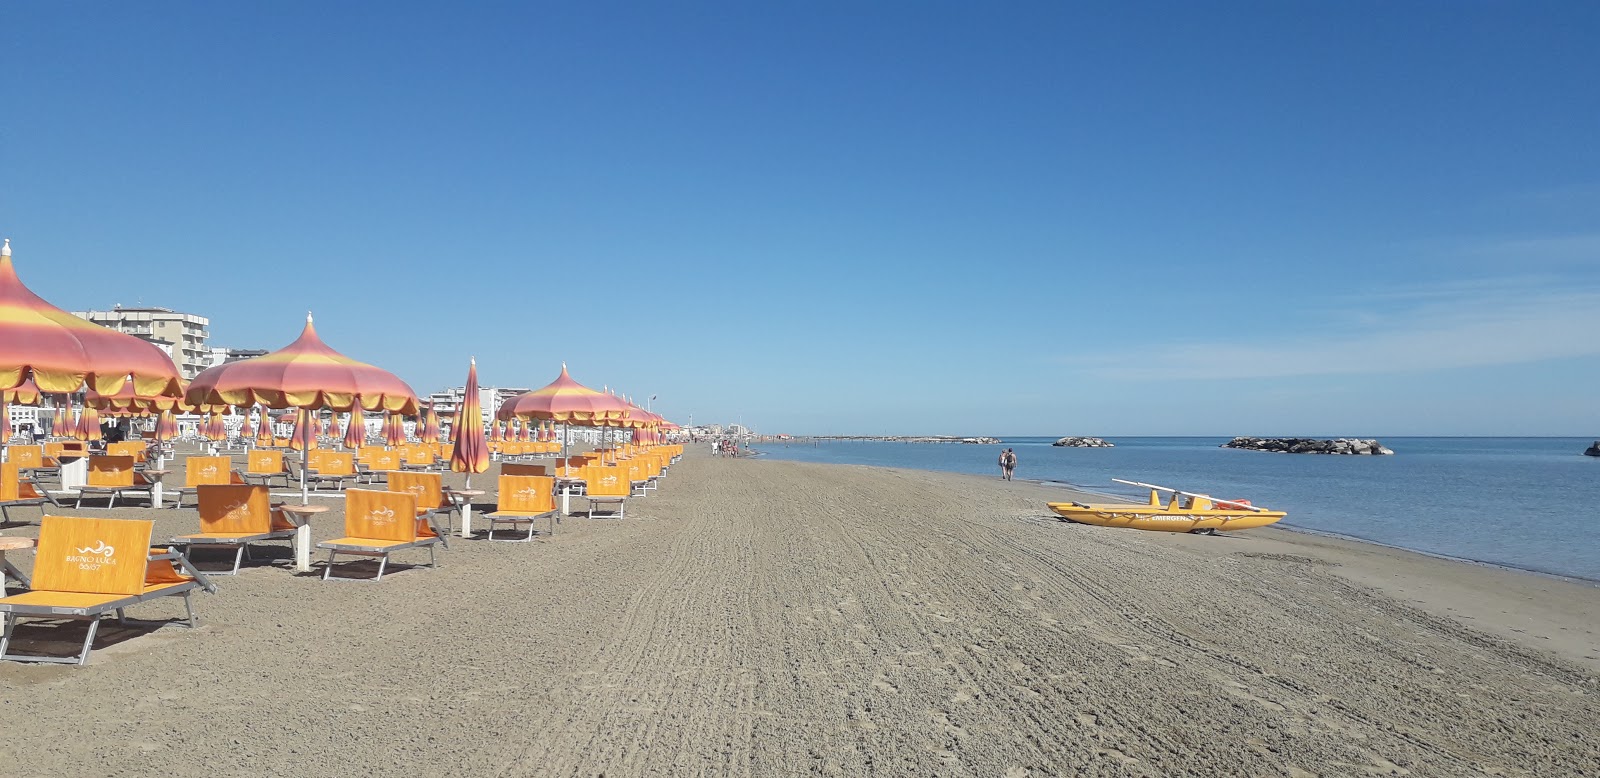 Zdjęcie Torre pedrera beach z powierzchnią jasny, drobny piasek